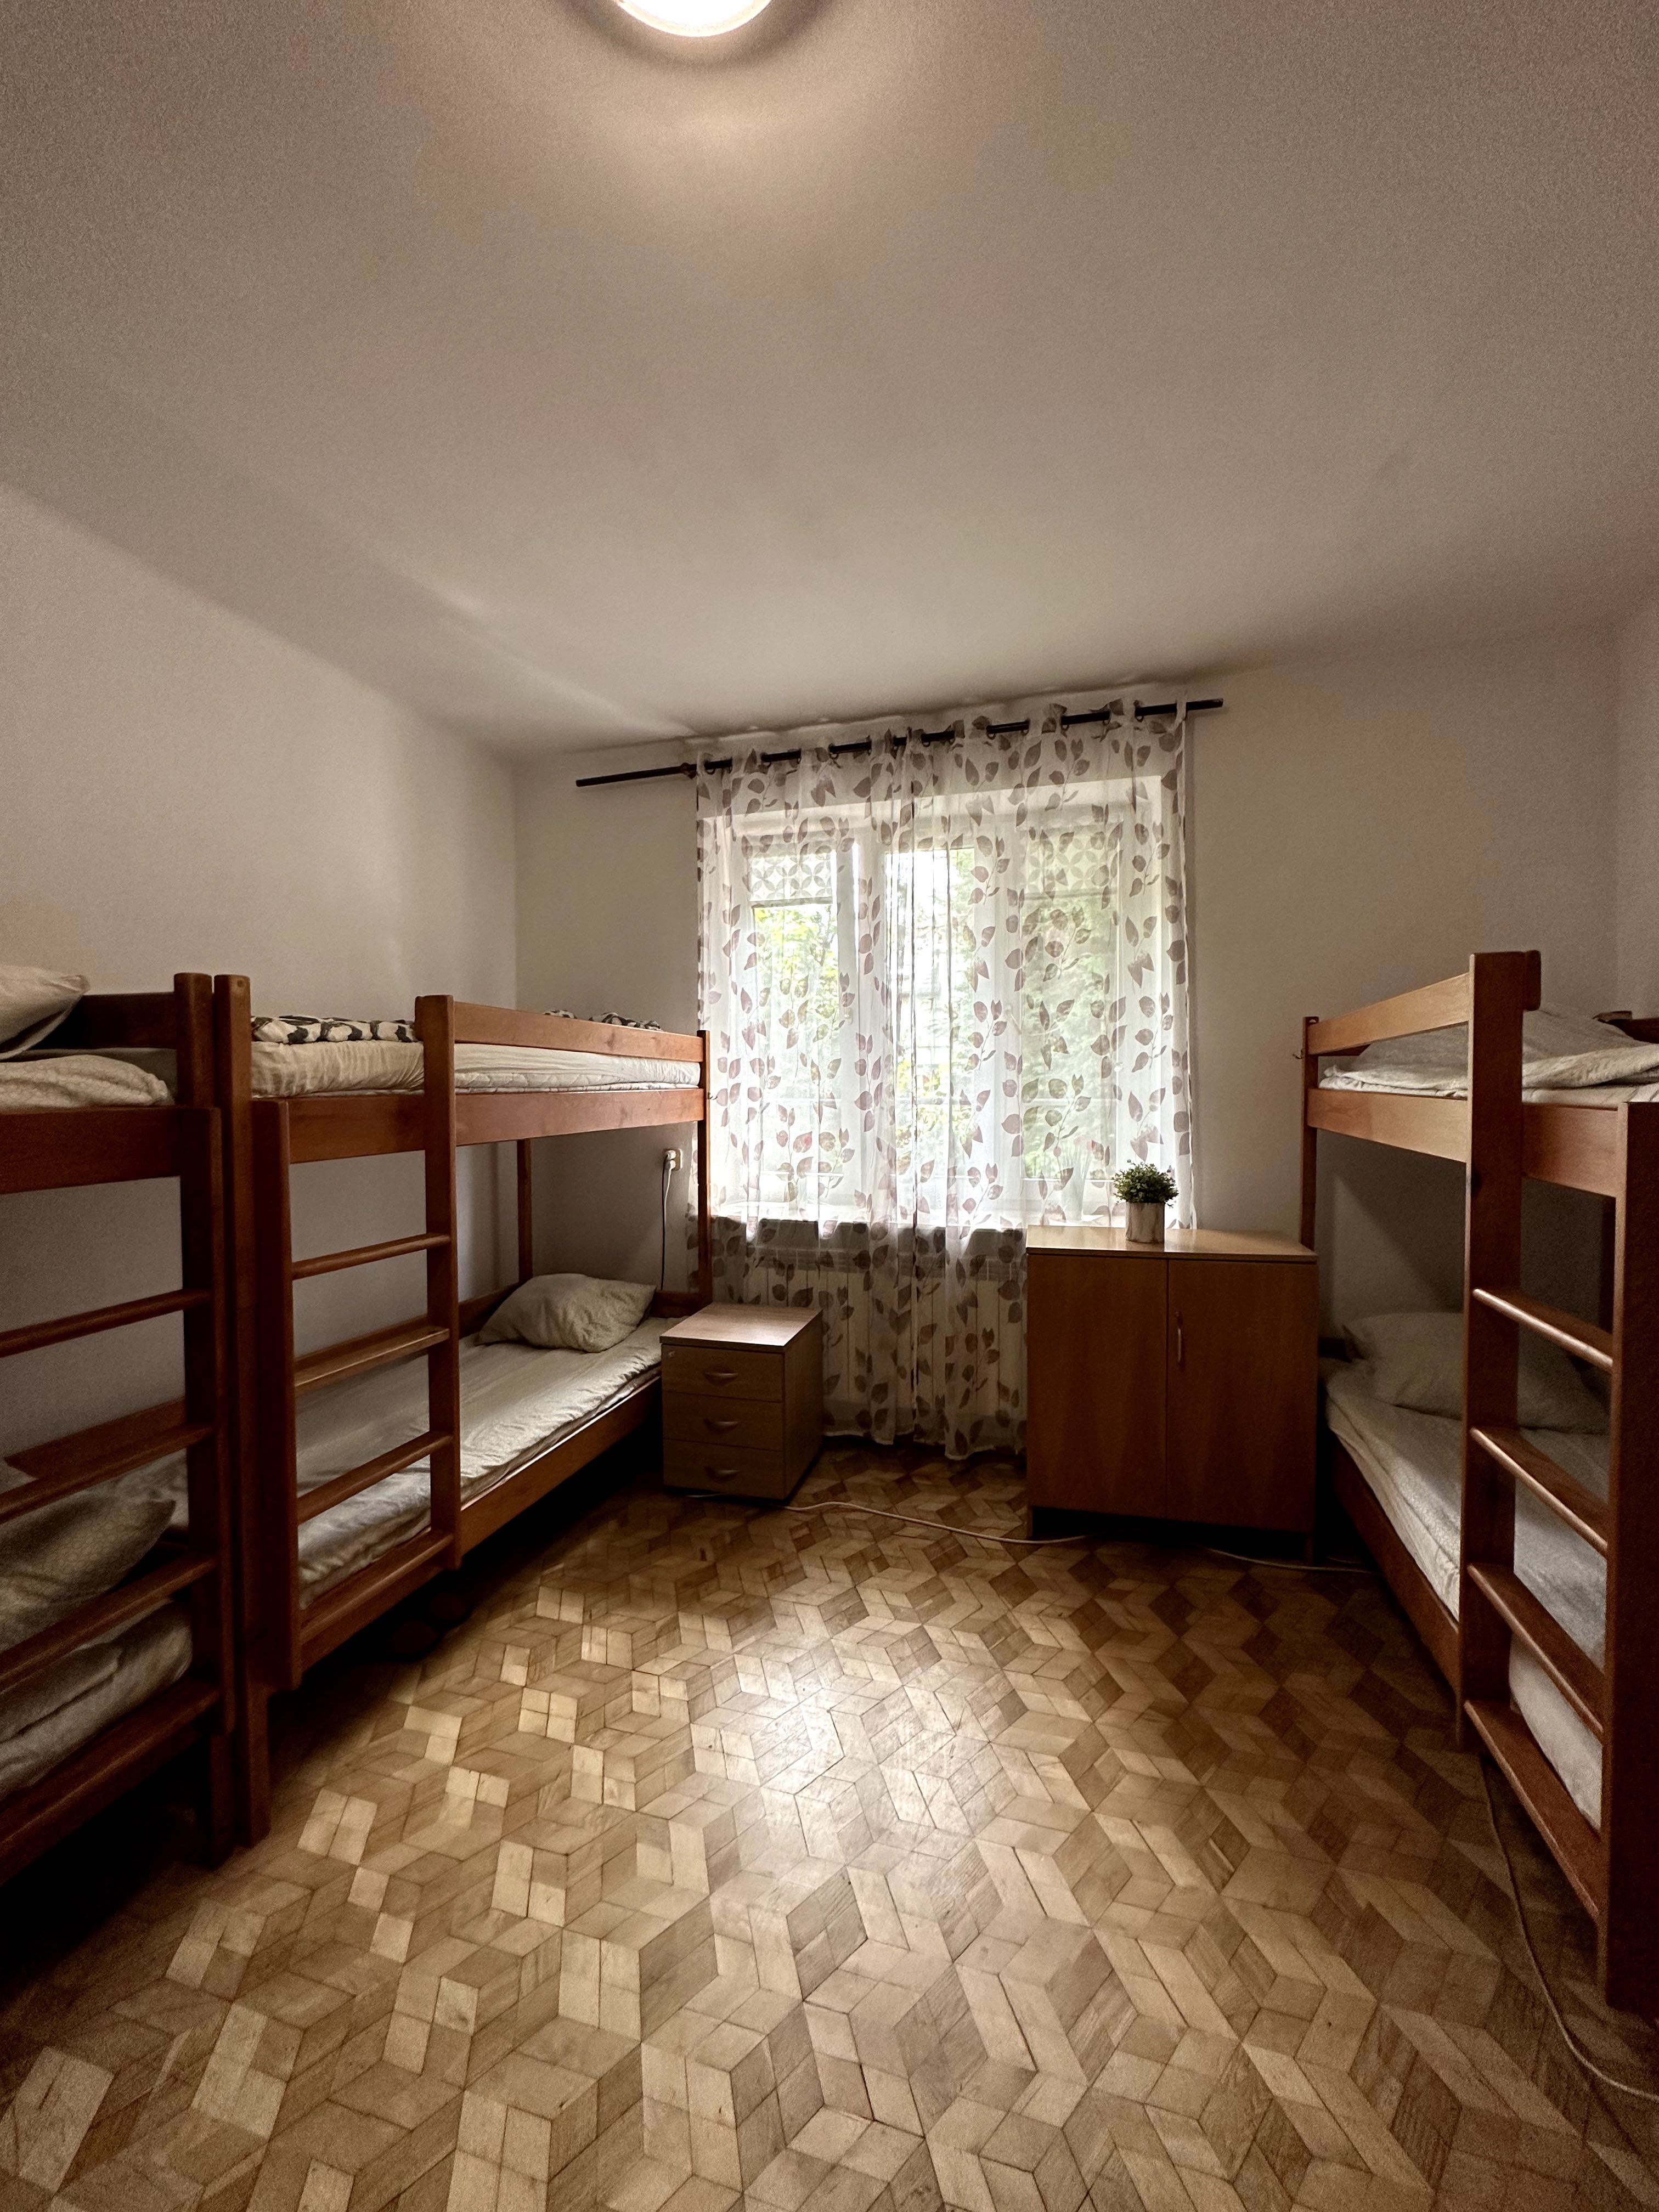 275 зл неделя жилье в Варшаве, район Влохи, для студентов/для рабочих